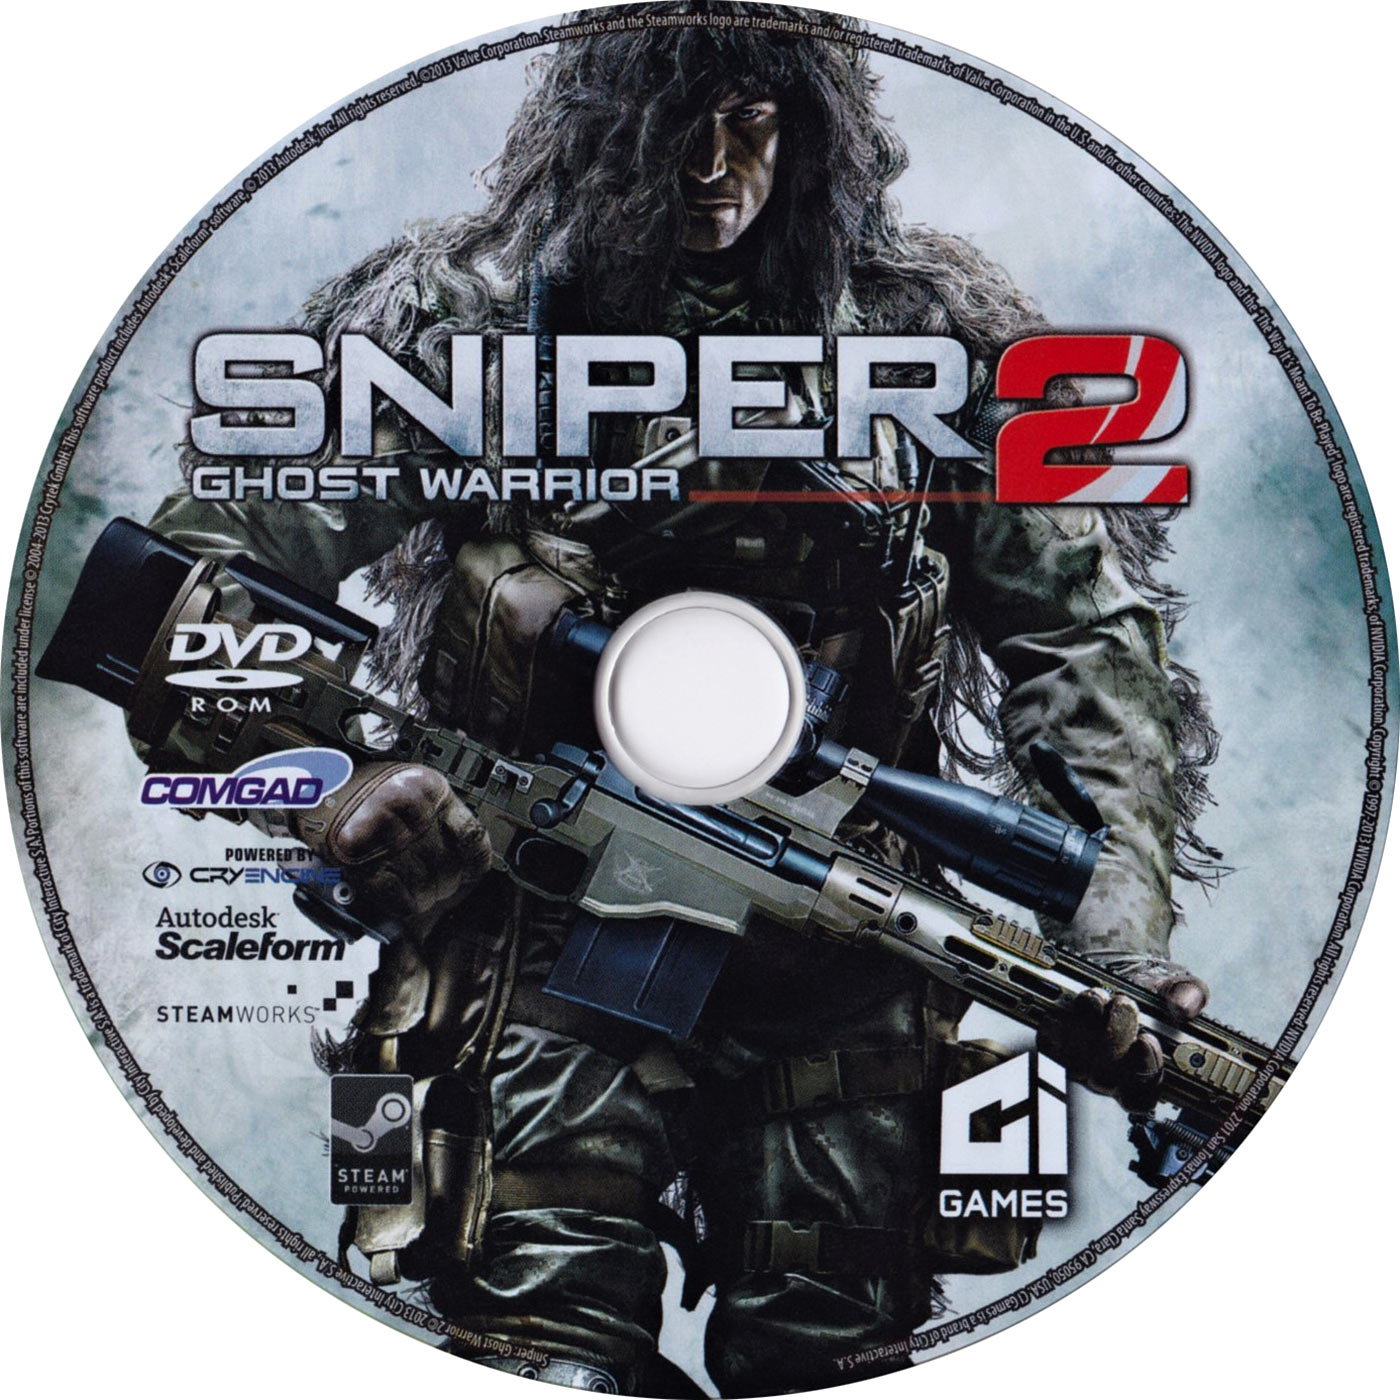 Sniper elite 4 cd key